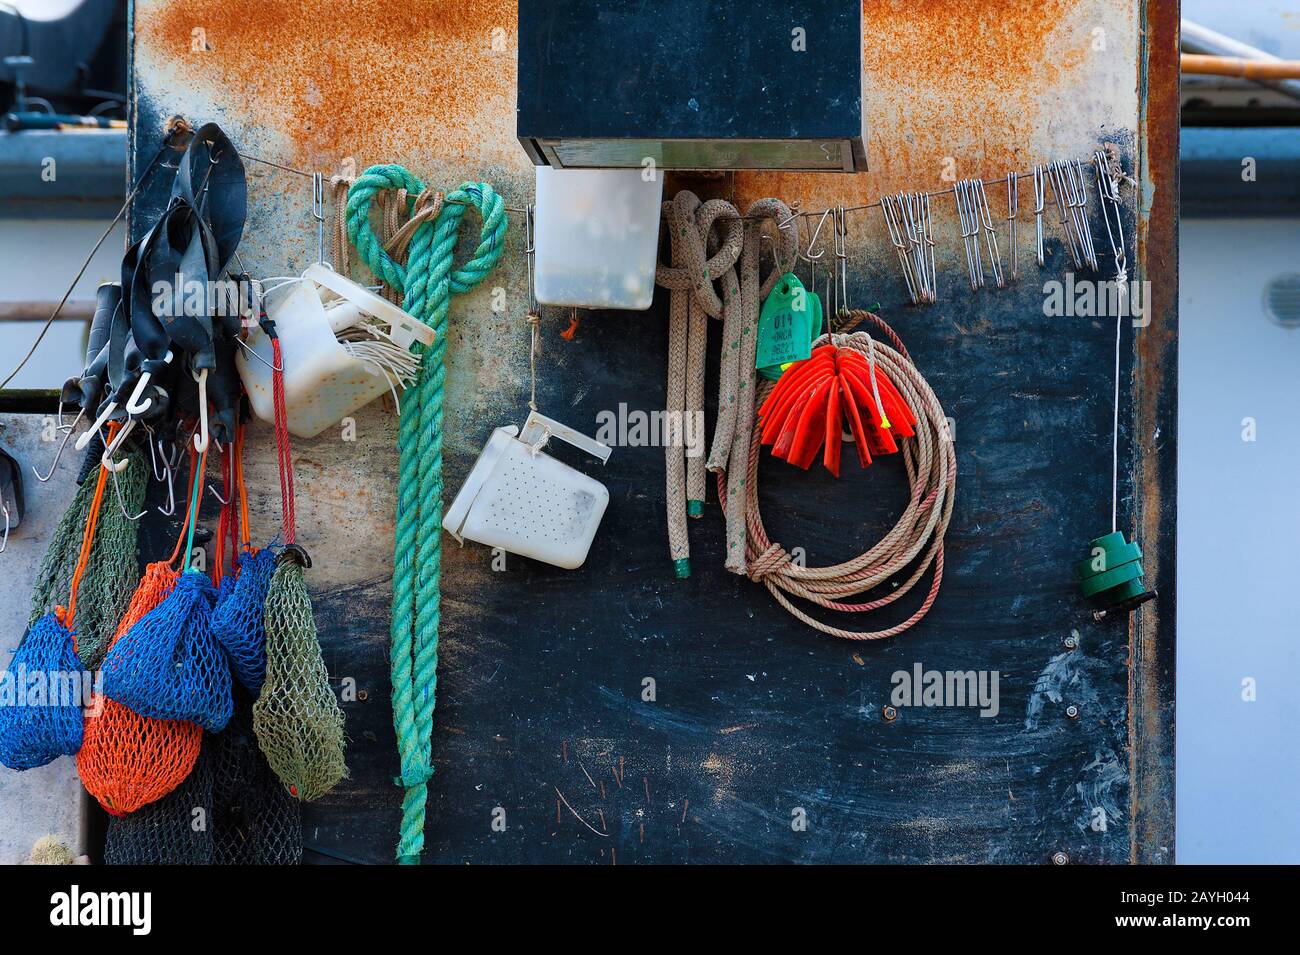 Newport, Oregon, USA - 25. Mai 2016: Nahaufnahme der Ausrüstung der Fischer auf dem Boot im Jachthafen in Newport, Oregon. Stockfoto